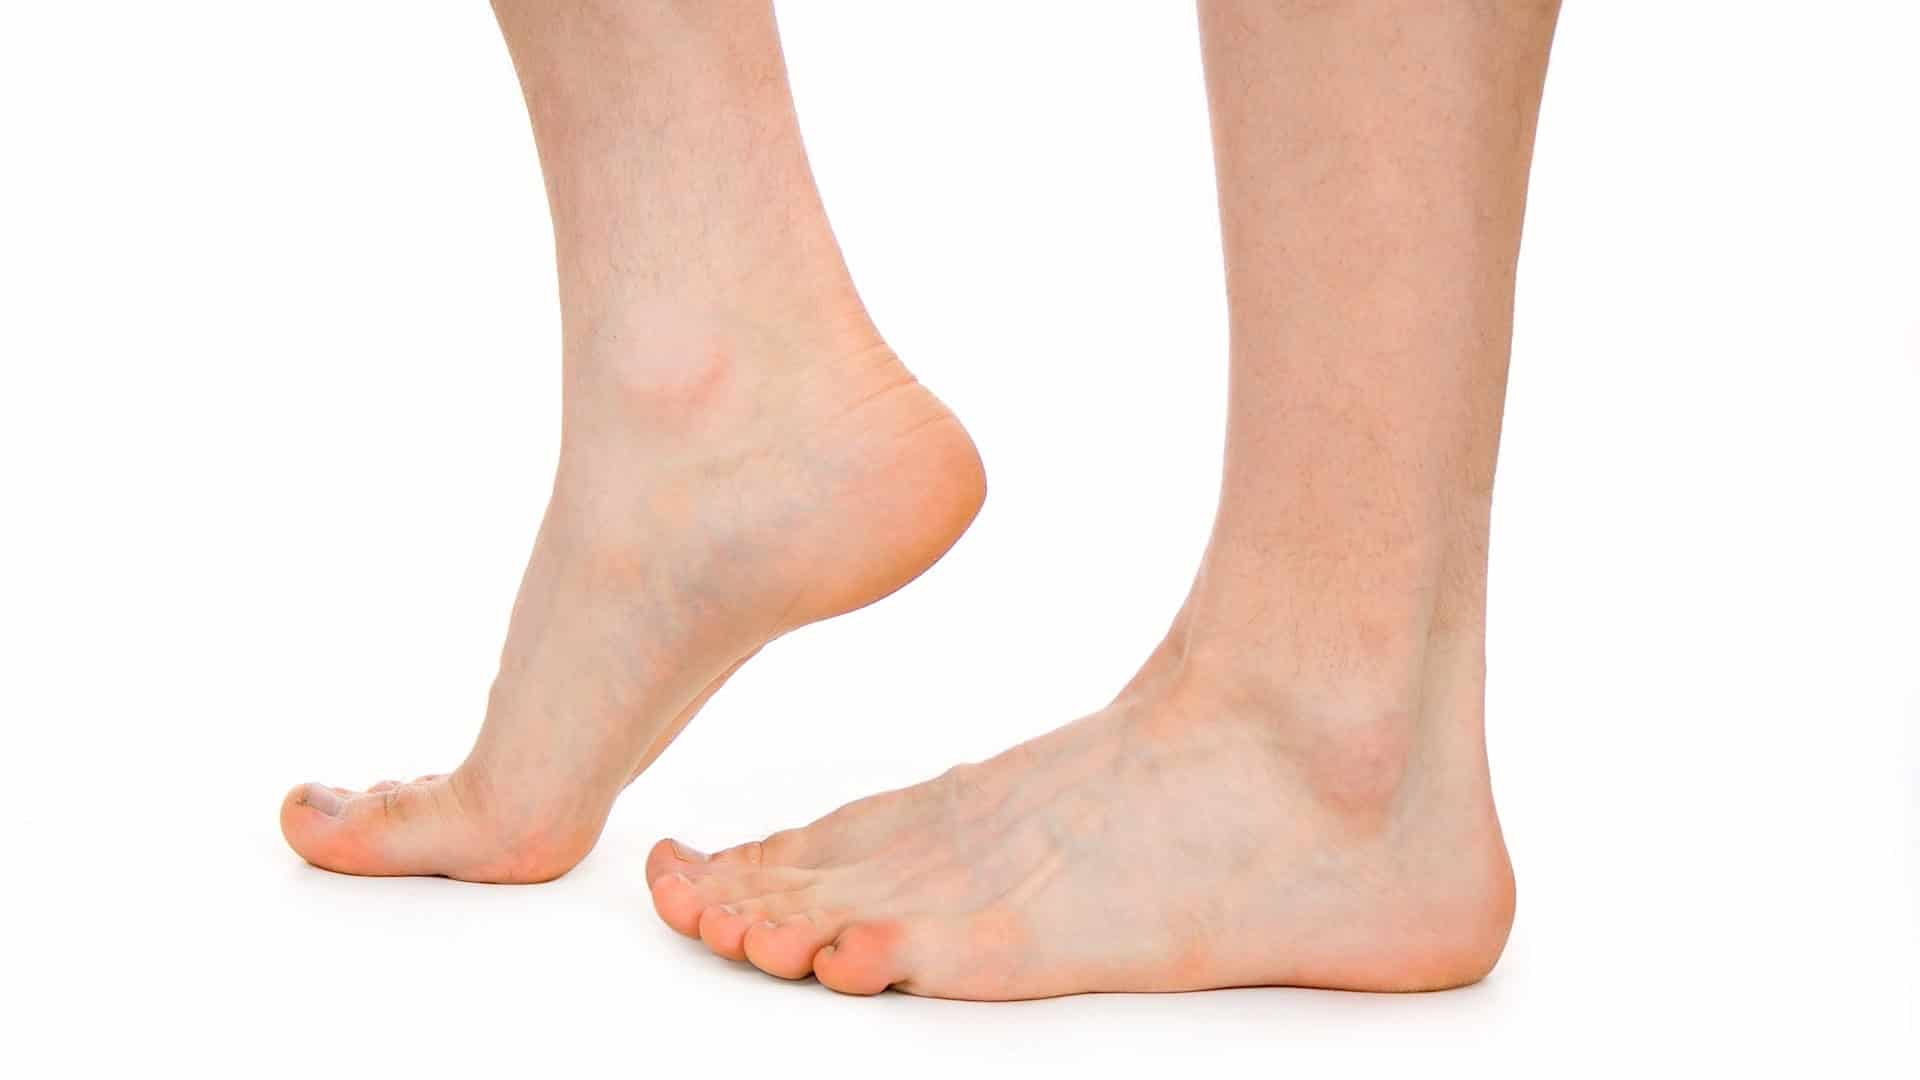 liječenje osteoartritisa od stopala stopala)